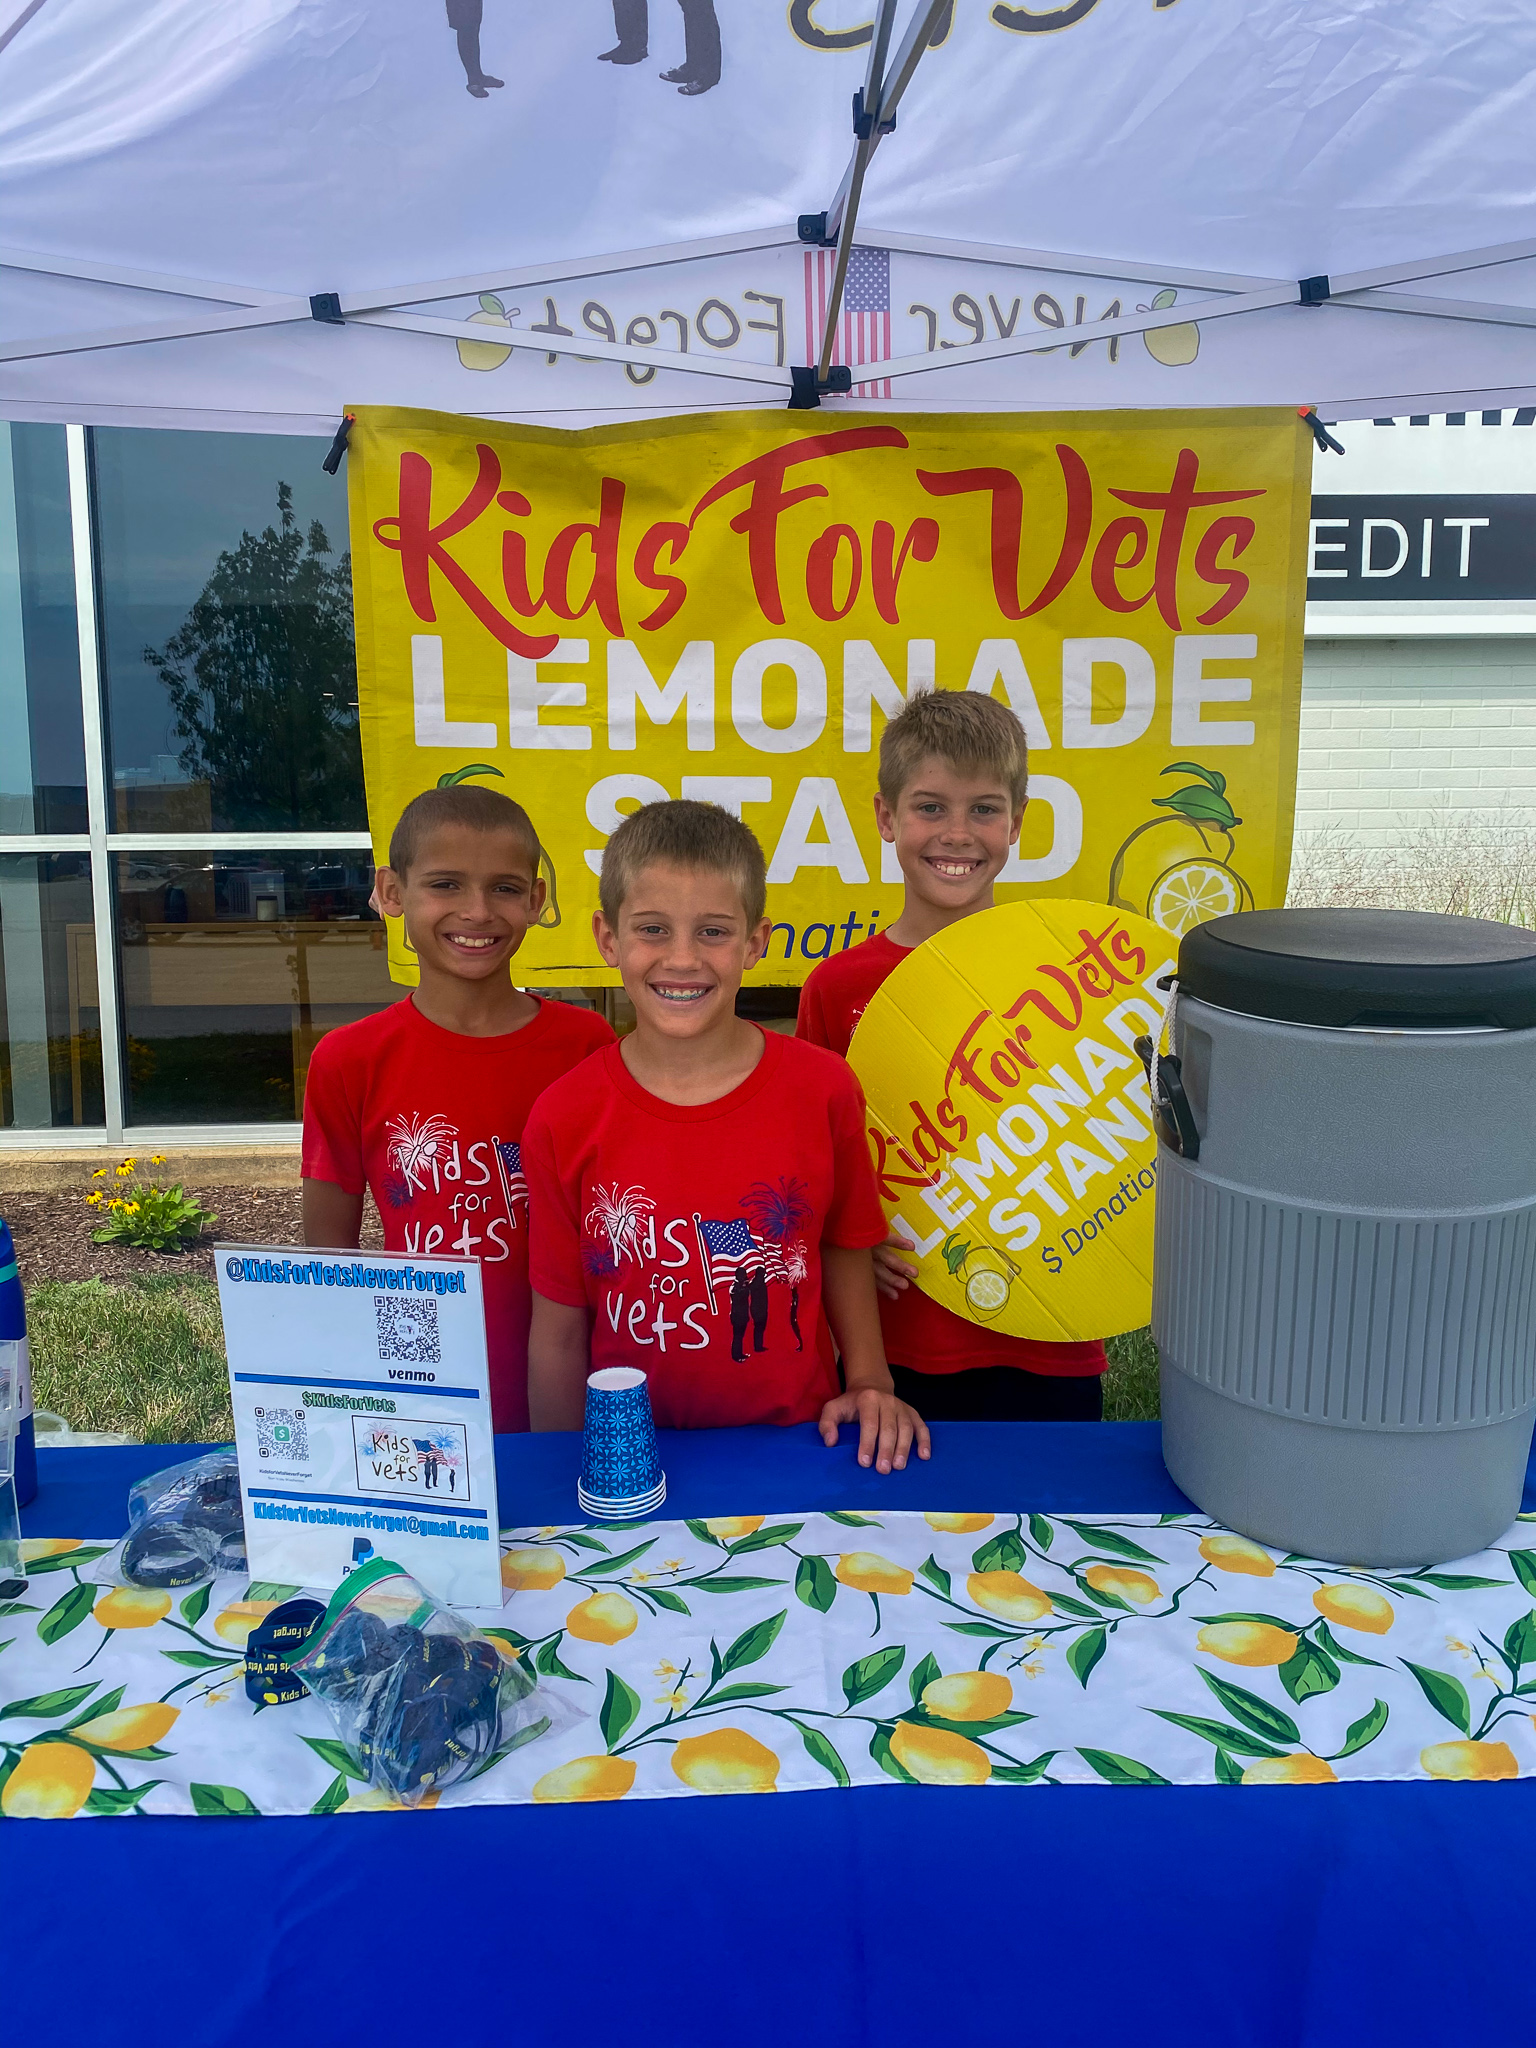 Kids sell lemonade for veterans